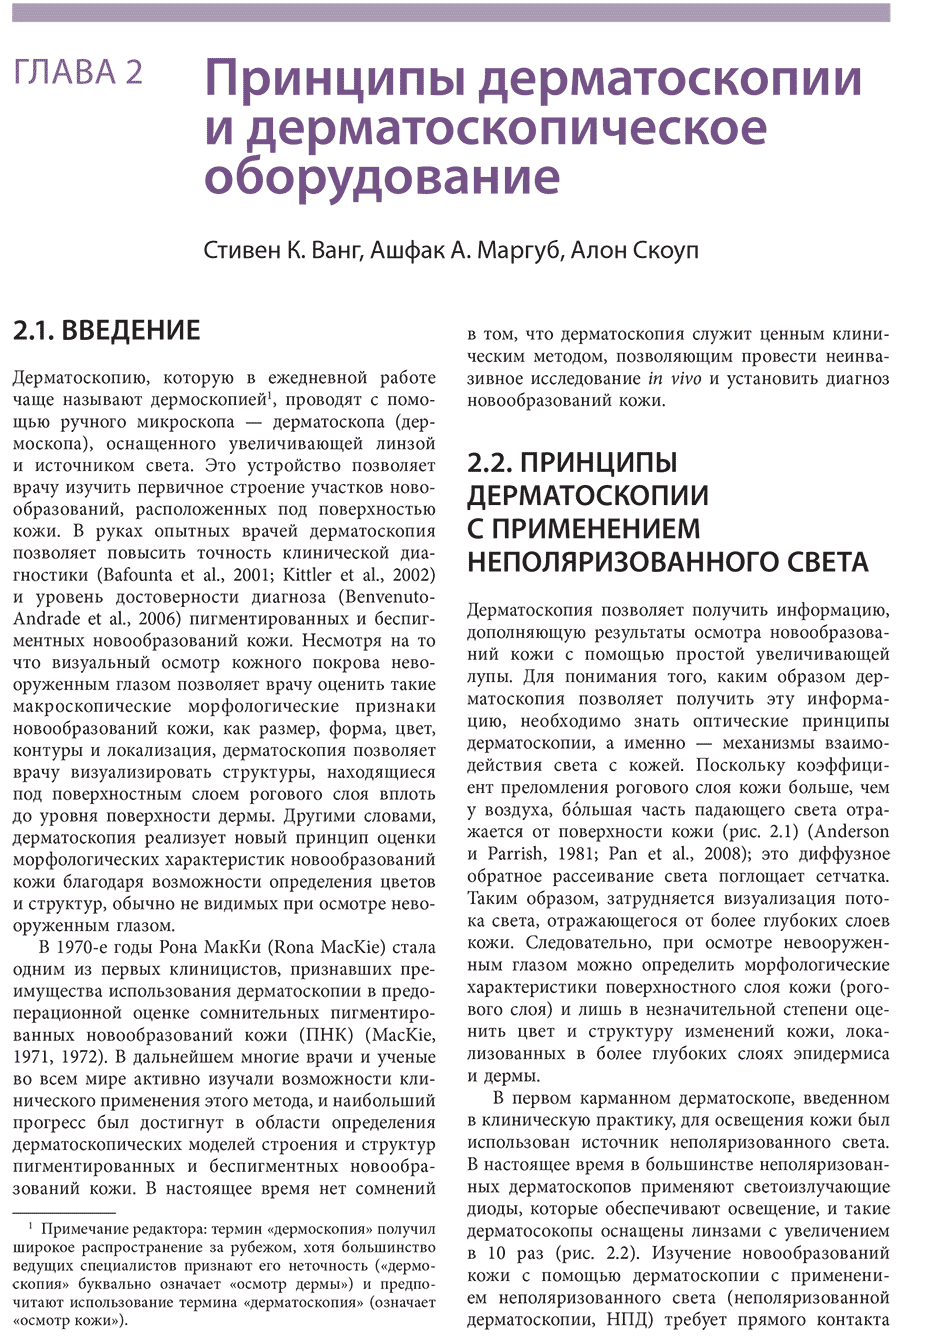 Пример страницы из книги "Атлас дерматоскопии" -  А. Маргуба